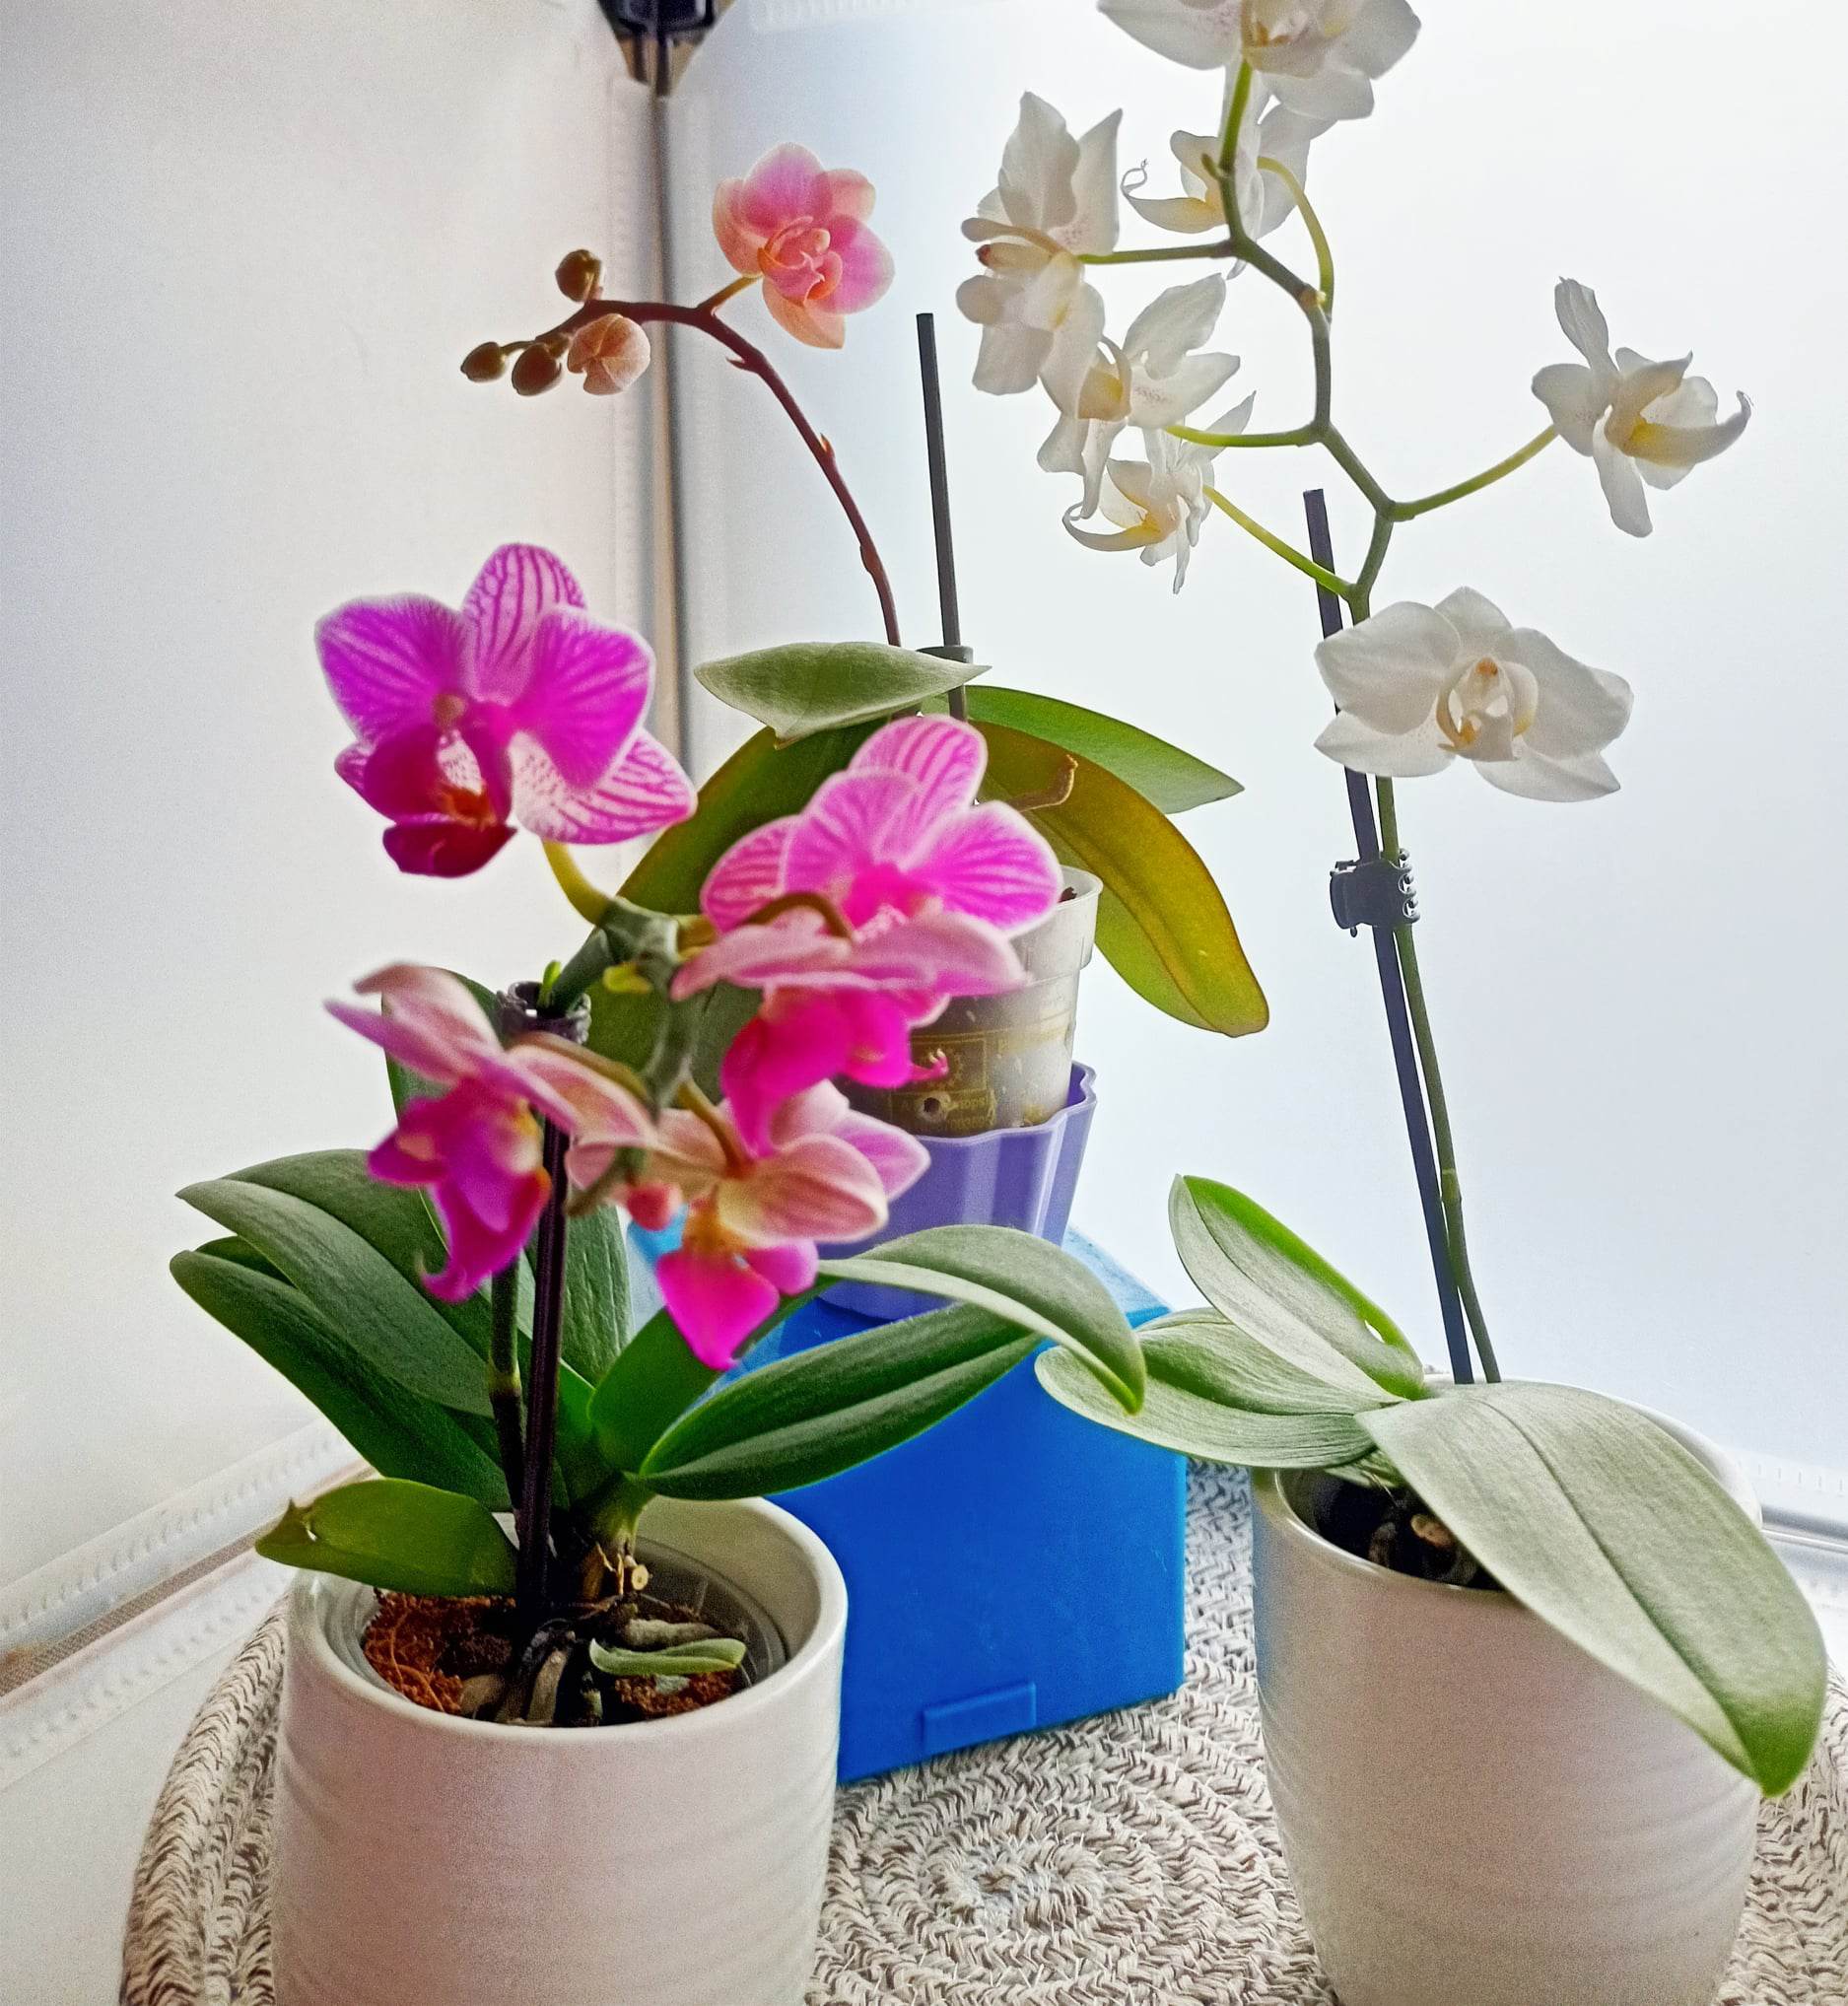 Fioritura orchidea: cosa fare in pratica